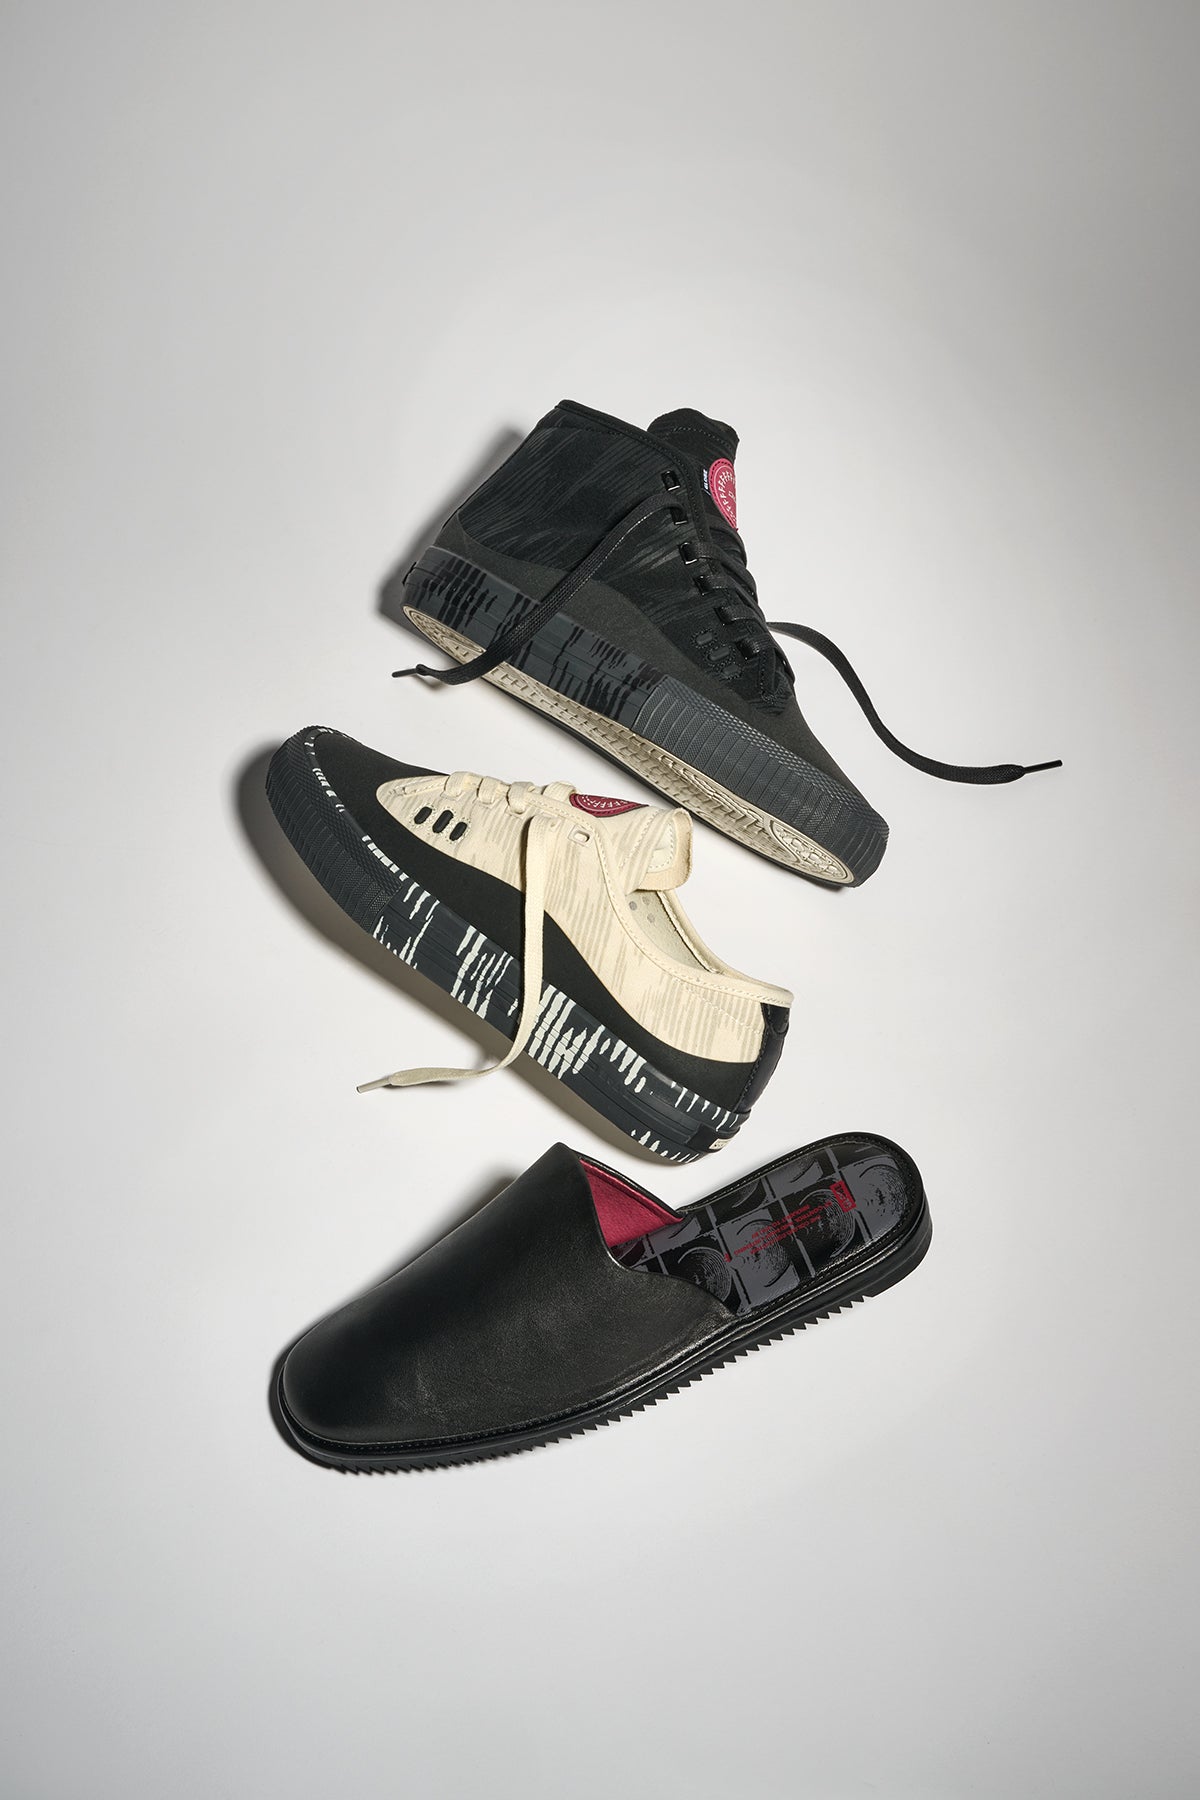 mule black former skate shoes